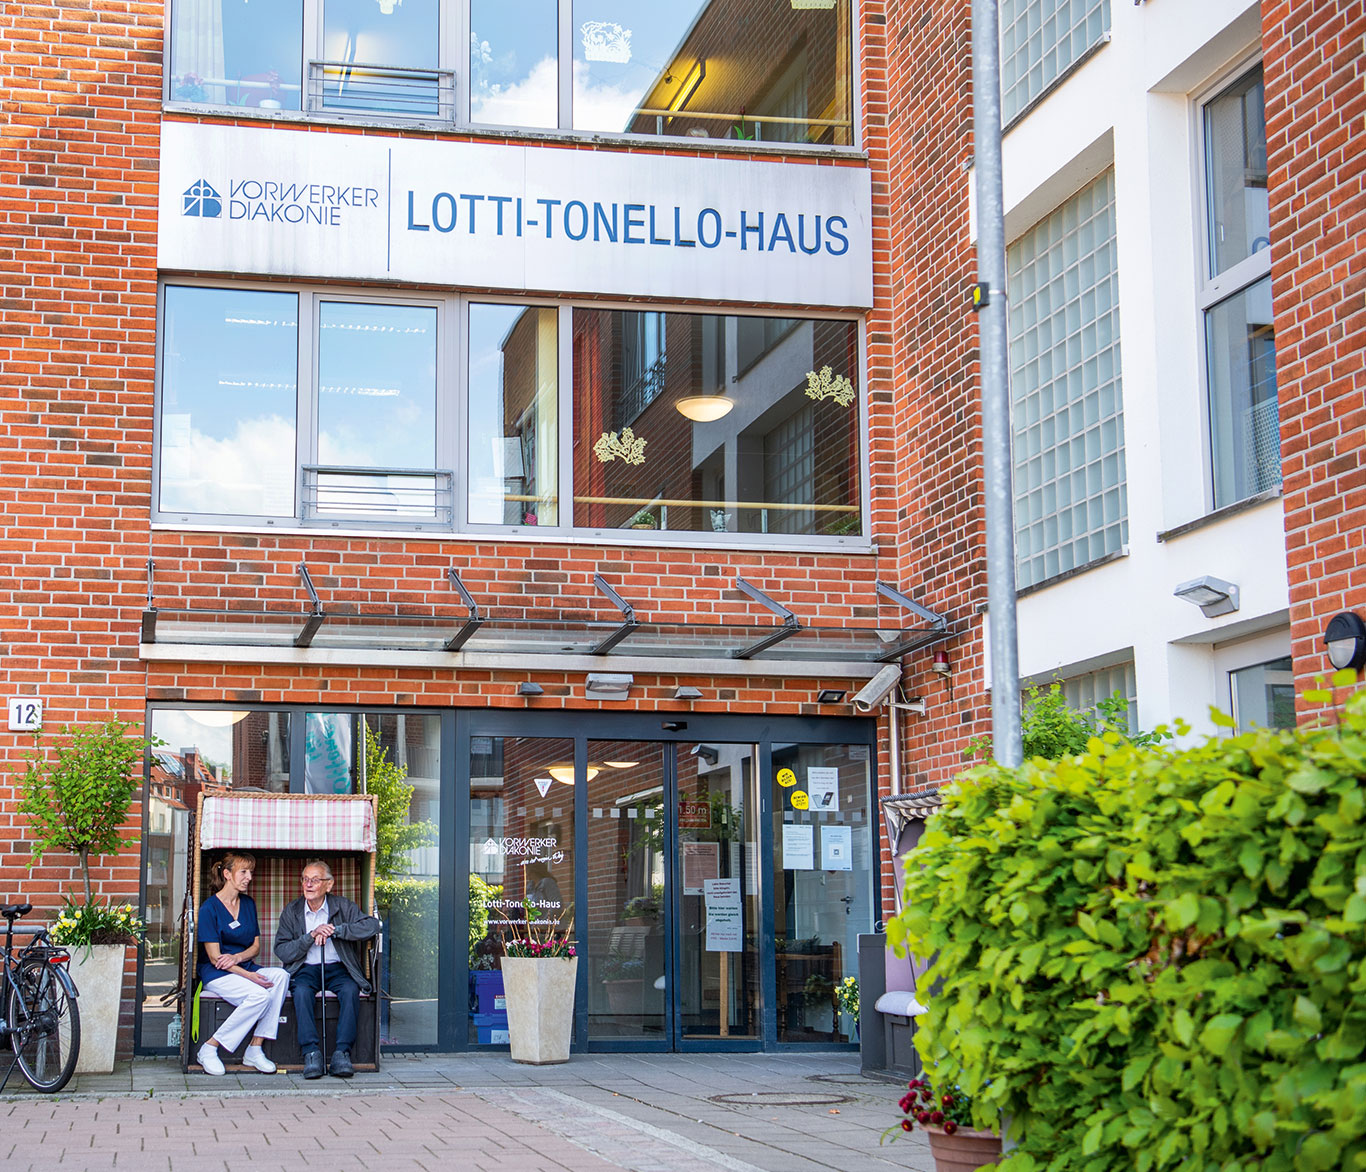 Blick auf den Eingang der Seniorenpflege-Einrichtung Lotti-Tonello-Haus.